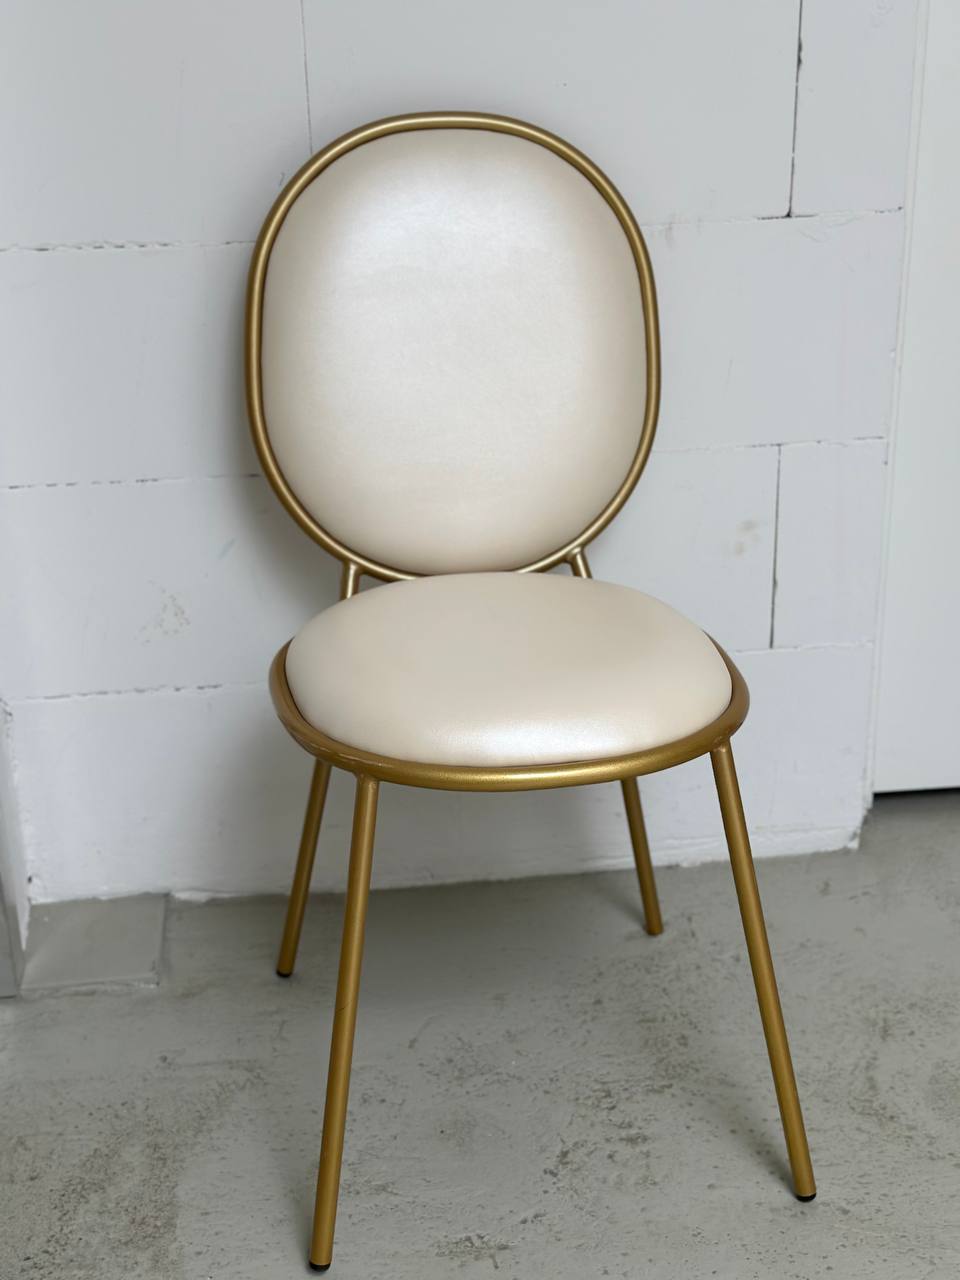 Ovaler Stuhl "Arina"